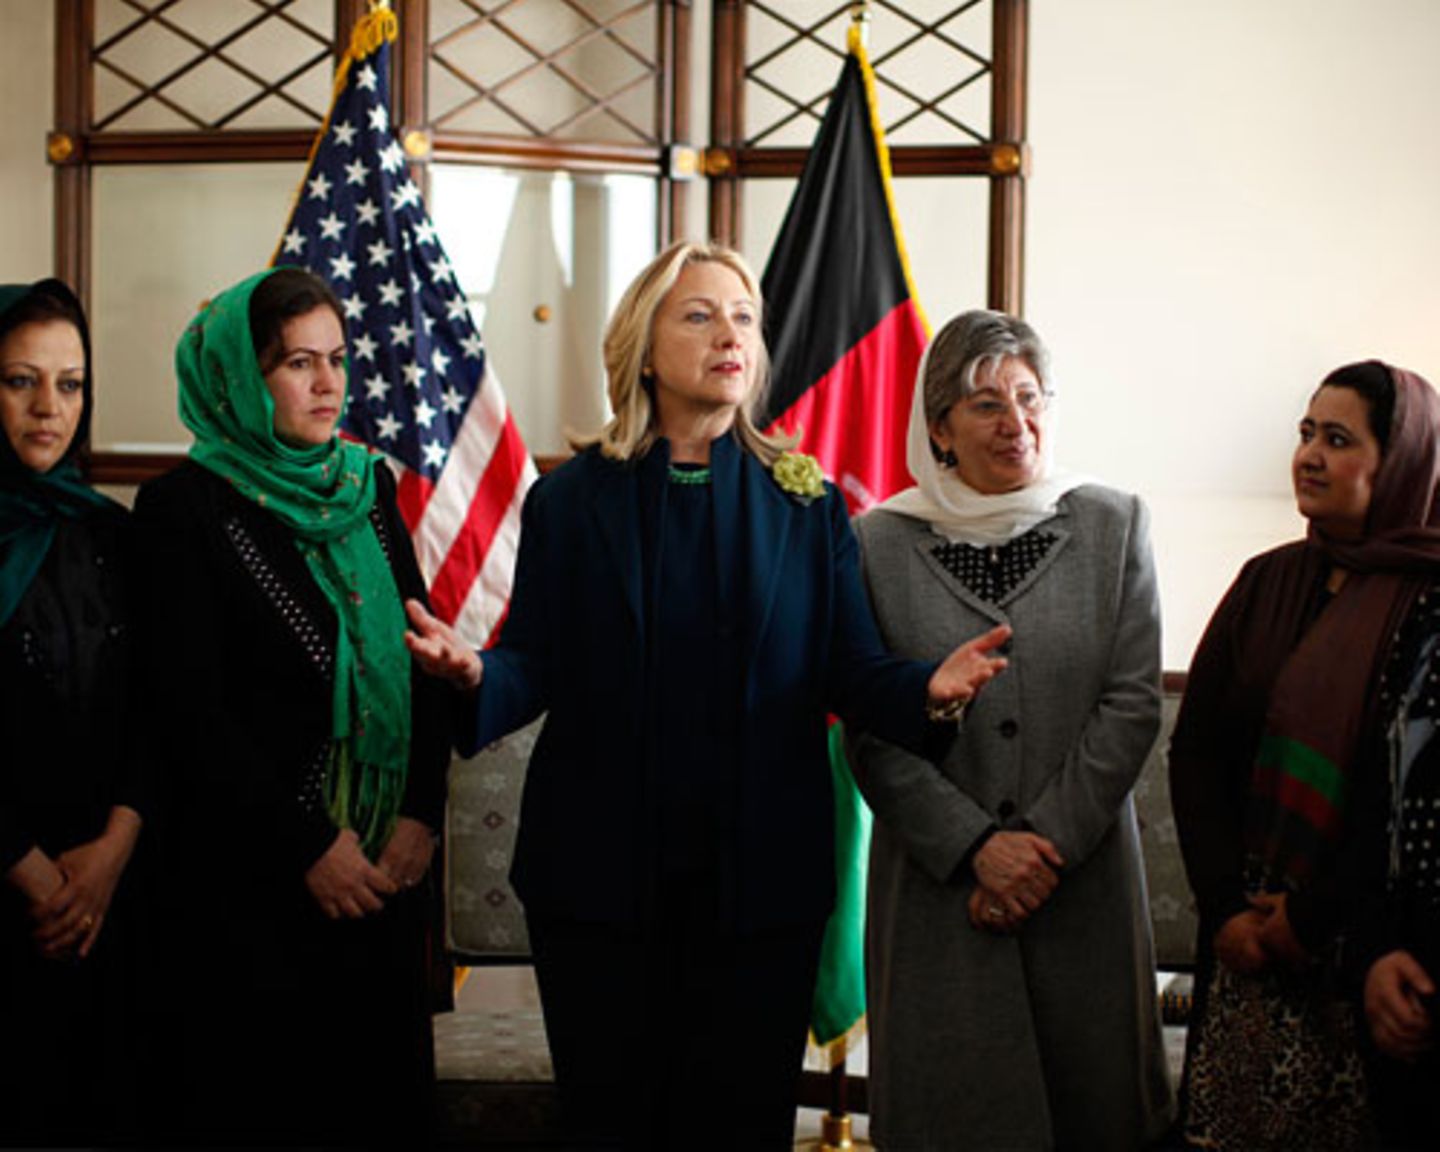 Worauf sie stolz ist: "Es ist mir gelungen eine unabhängige Menschrechtskommission in einem Land zu etablieren, in dem es früher schon ein Verbrechen war, das Wort 'Menschenrechte' nur auszusprechen." Sima Samar engagiert sich seit dem Sturz der Taliban für den Aufbau der Demokratie: Von 2001 bis 2002 war sie die erste Ministerin für Frauenangelegenheiten und Stellvertreterin von Präsident Hamid Karzai. 2004 wurde sie Vorsitzende der neu gegründeten "Afghanistan Independent Human Rights Commission" und wirbt unermüdlich, auch bei westlichen Politikern wie Hillary Clinton, für einen besseren Schutz der Menschenrechte in Afghanistan.